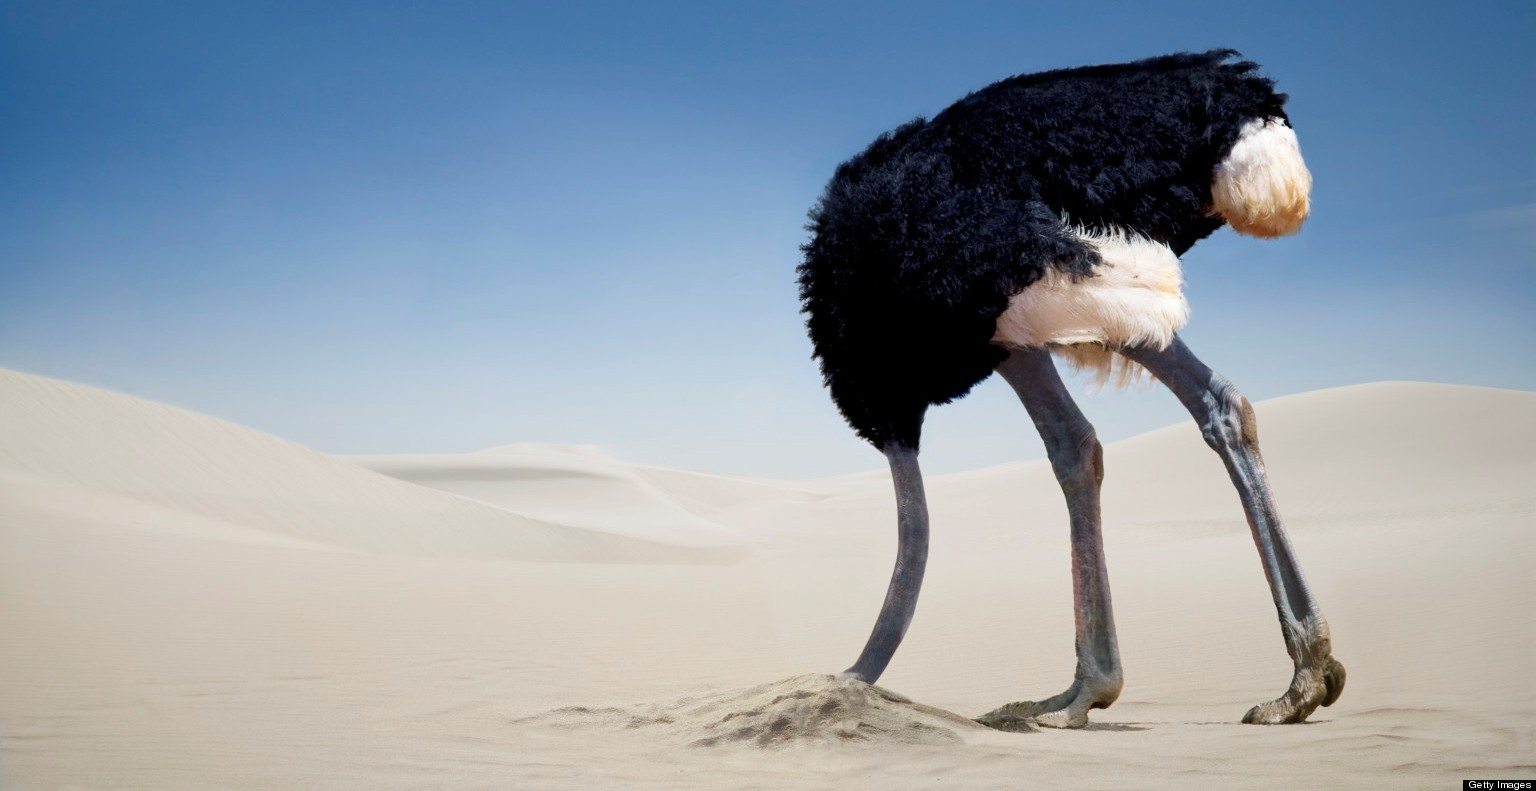 [Image: ostrich-in-sand.jpg]